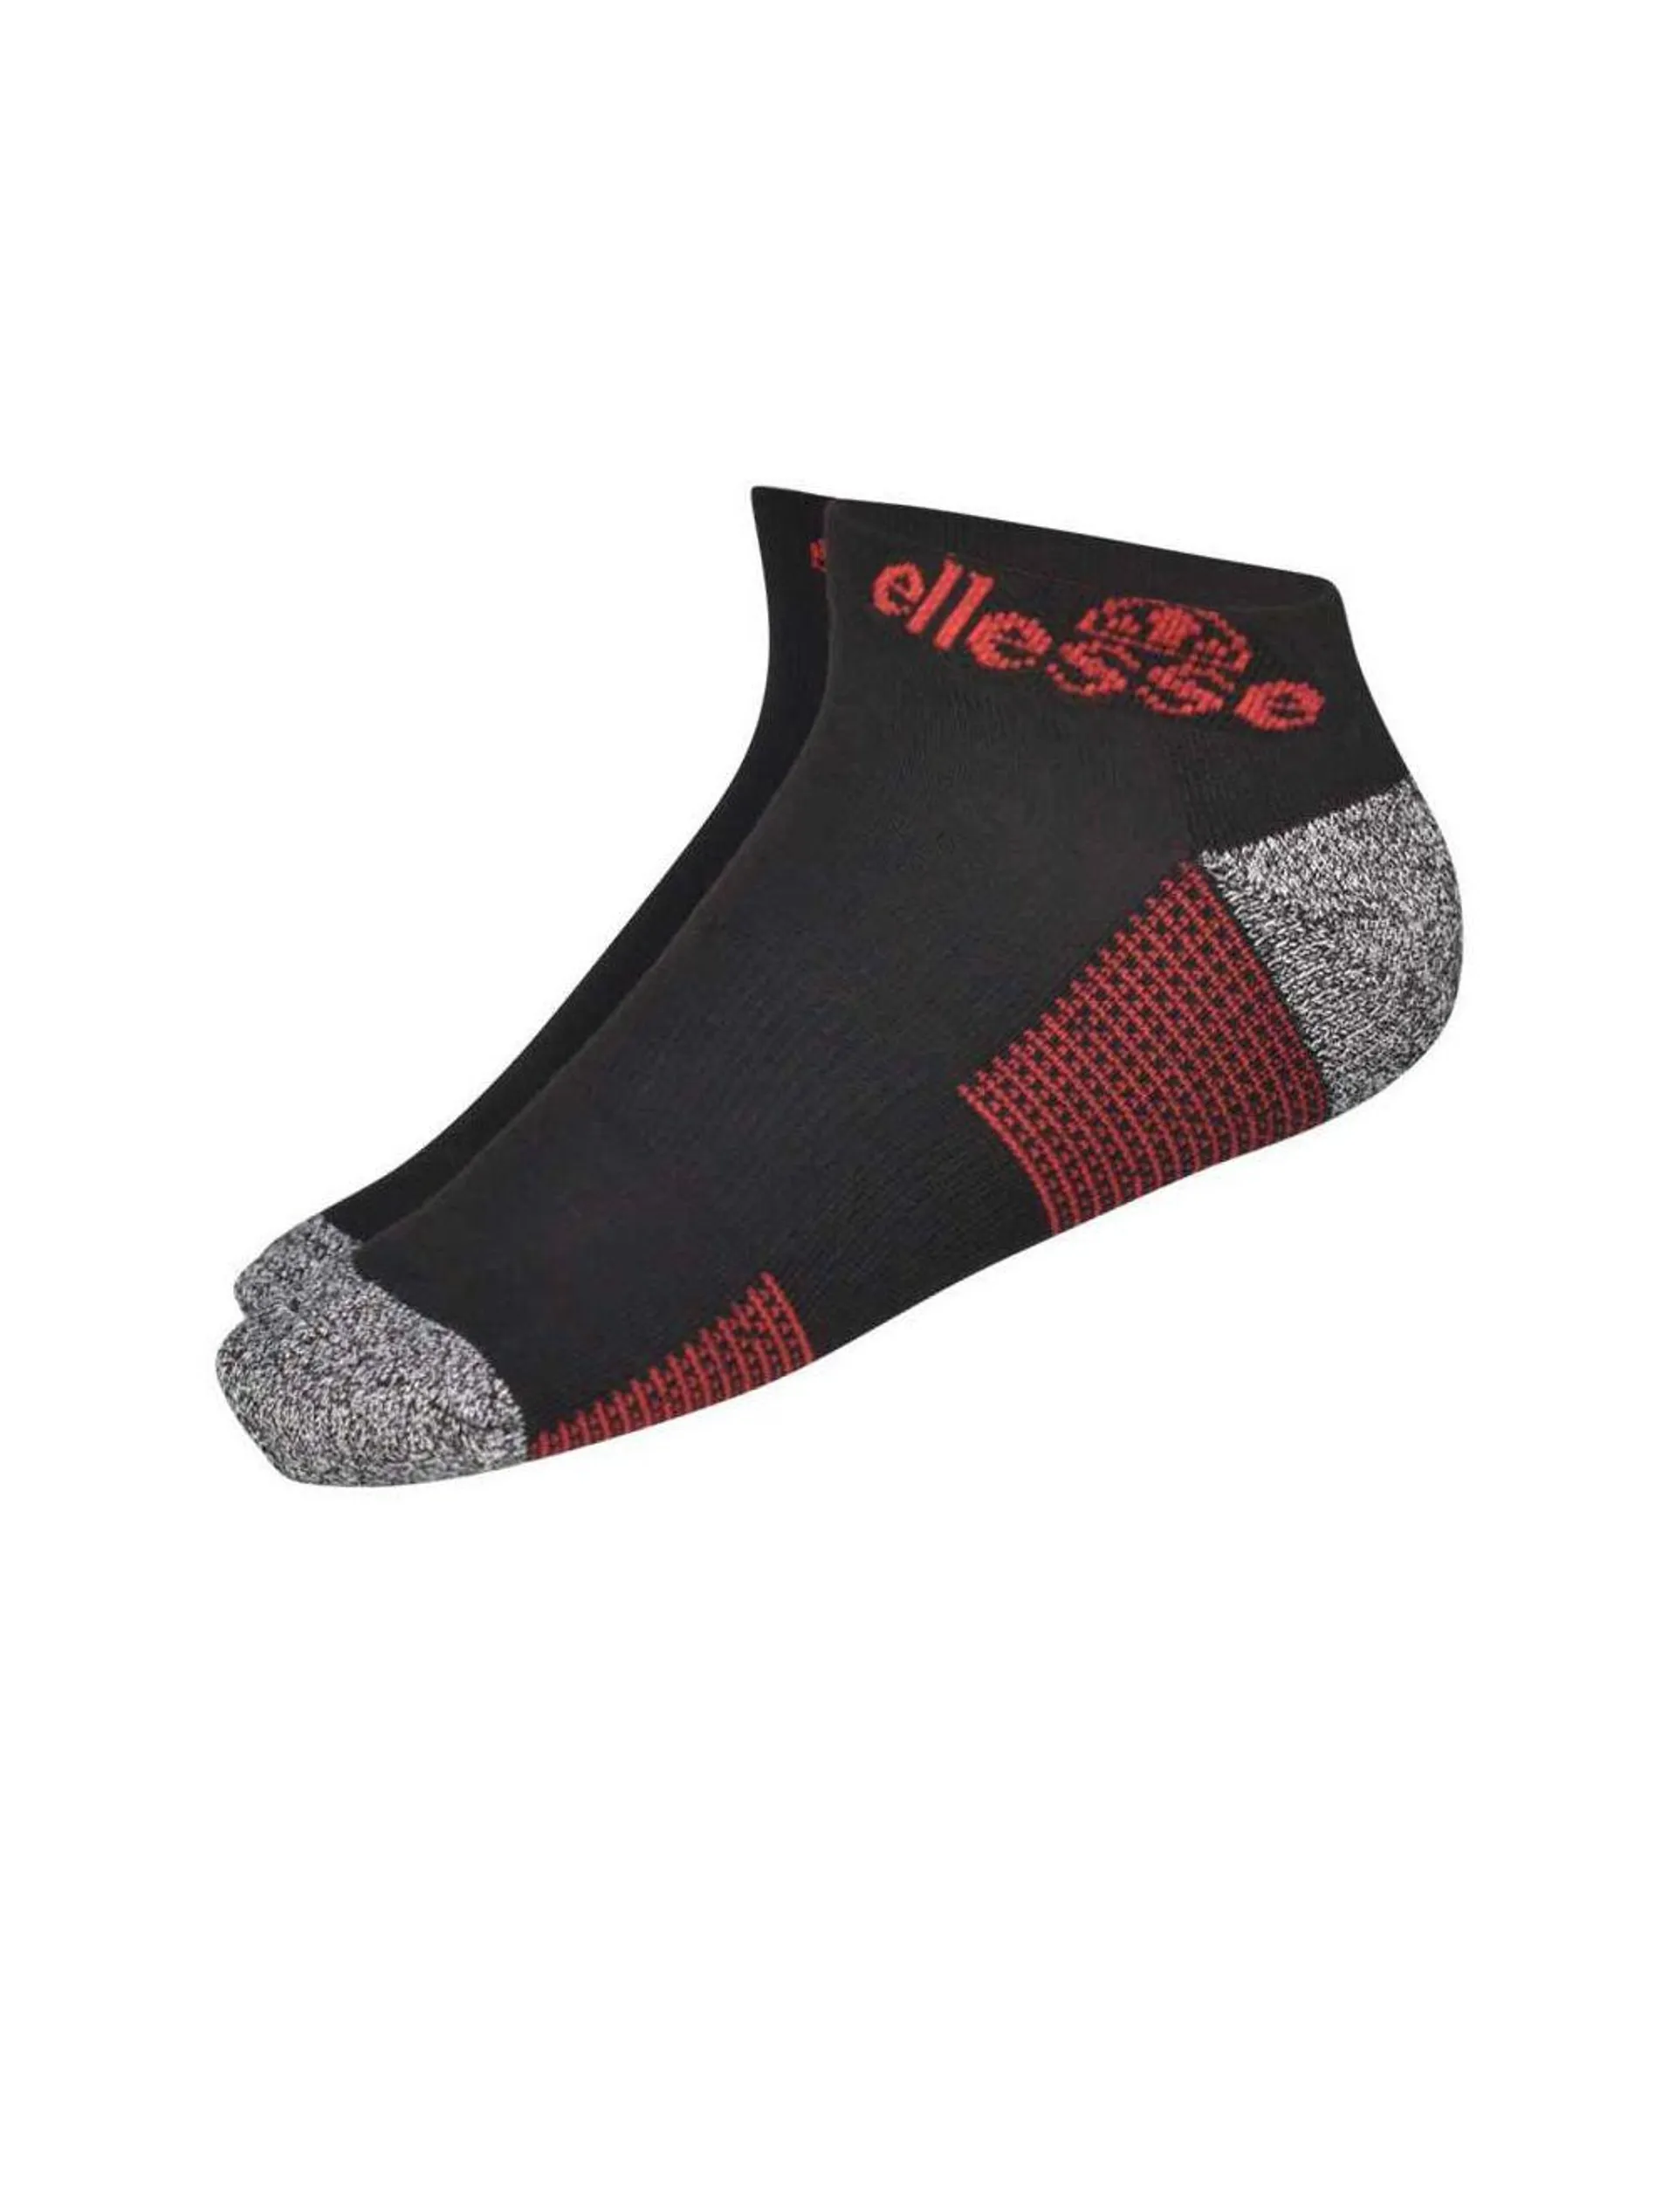 ellesse Trainer Liner Socks Mens Black Red